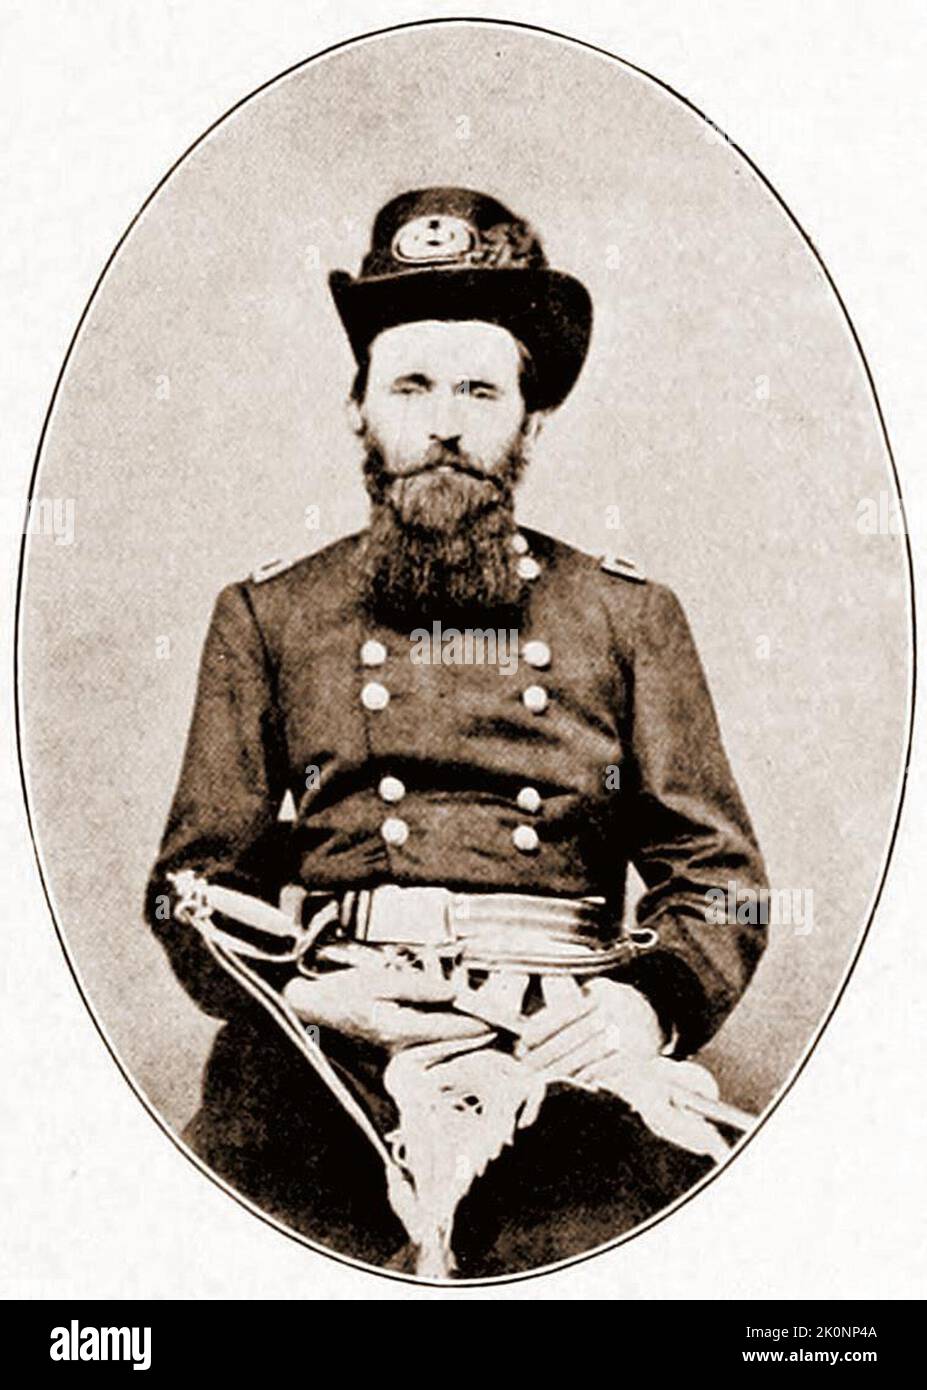 Ein Foto des US-Präsidenten Ulysses S. Grant aus dem Jahr 1861 in der Uniform des Brigadier General. Grant war 39 Jahre alt. Stockfoto